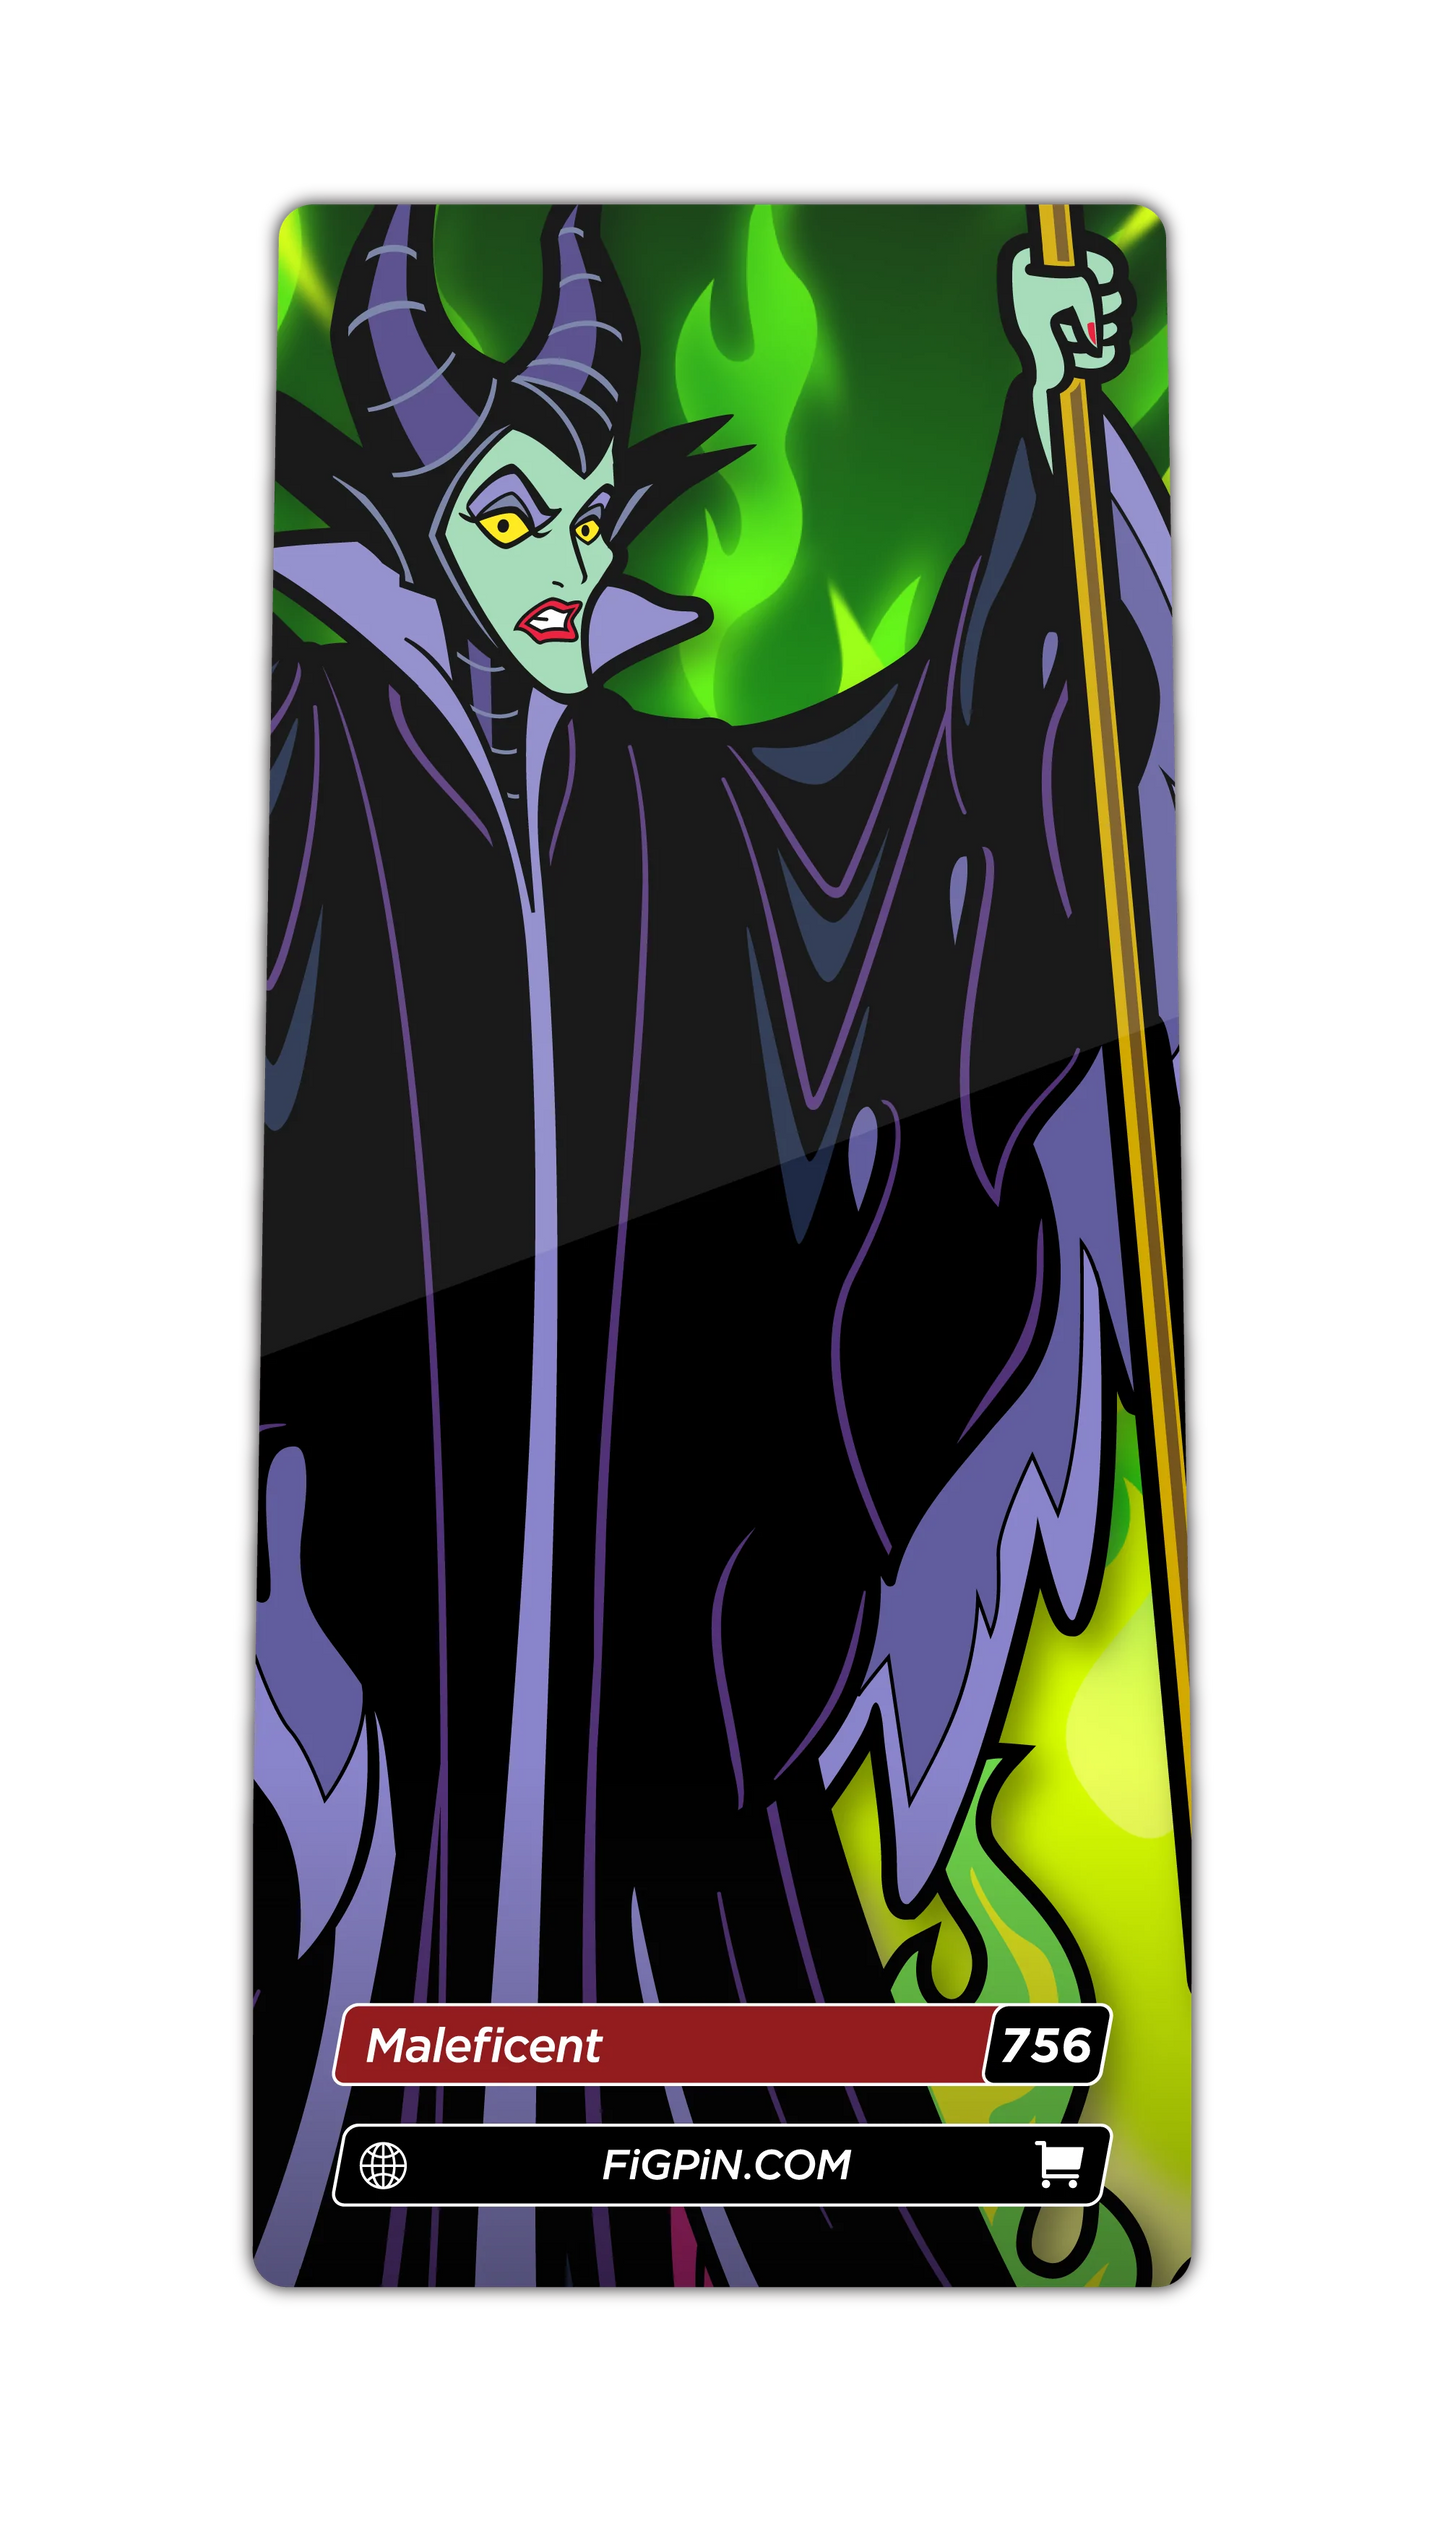 Maleficent (756) FiGPiN